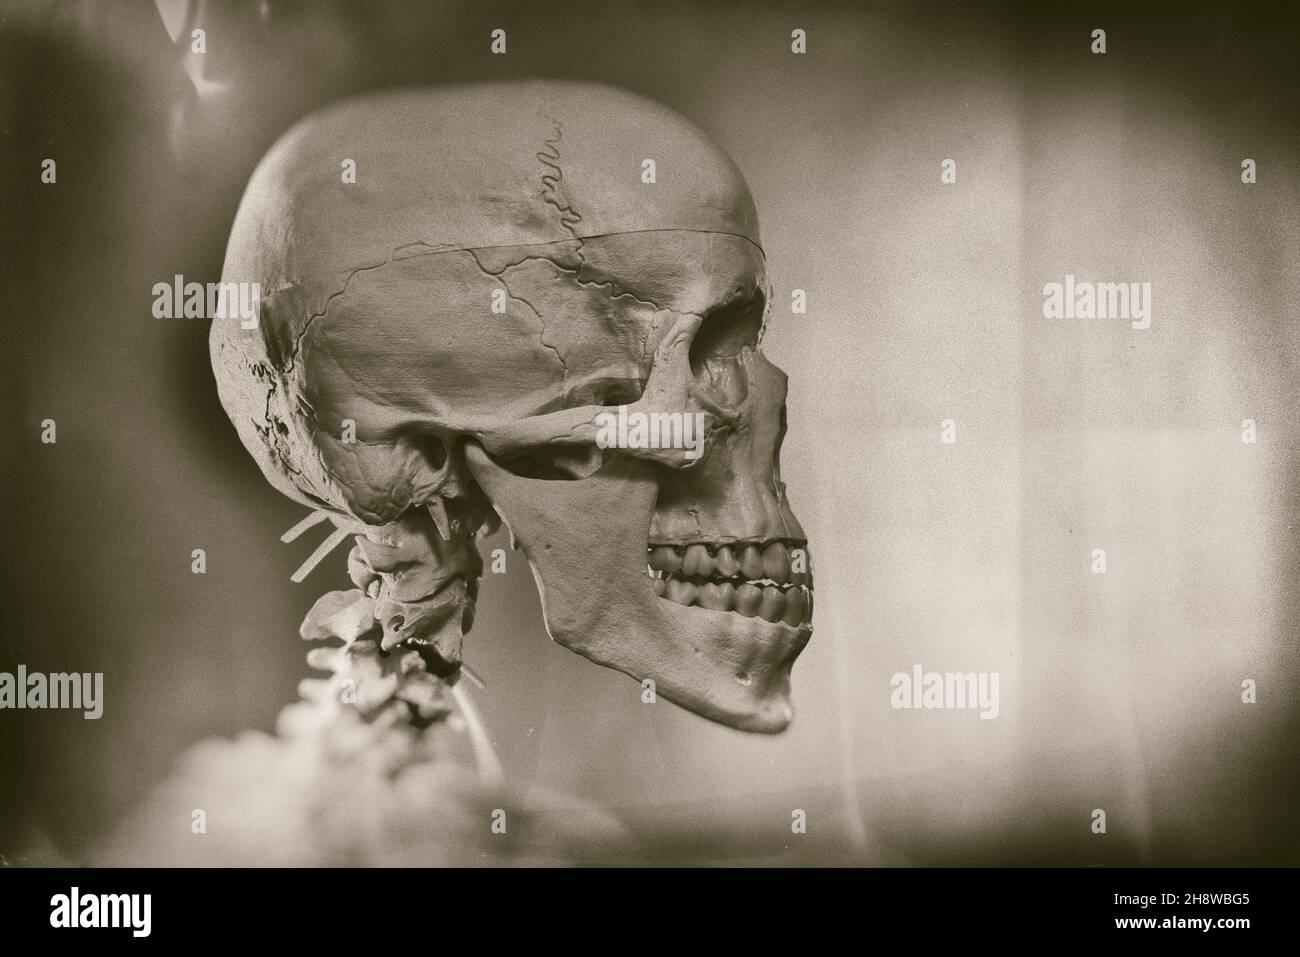 Human skull, skeleton digitally altered. Stock Photo